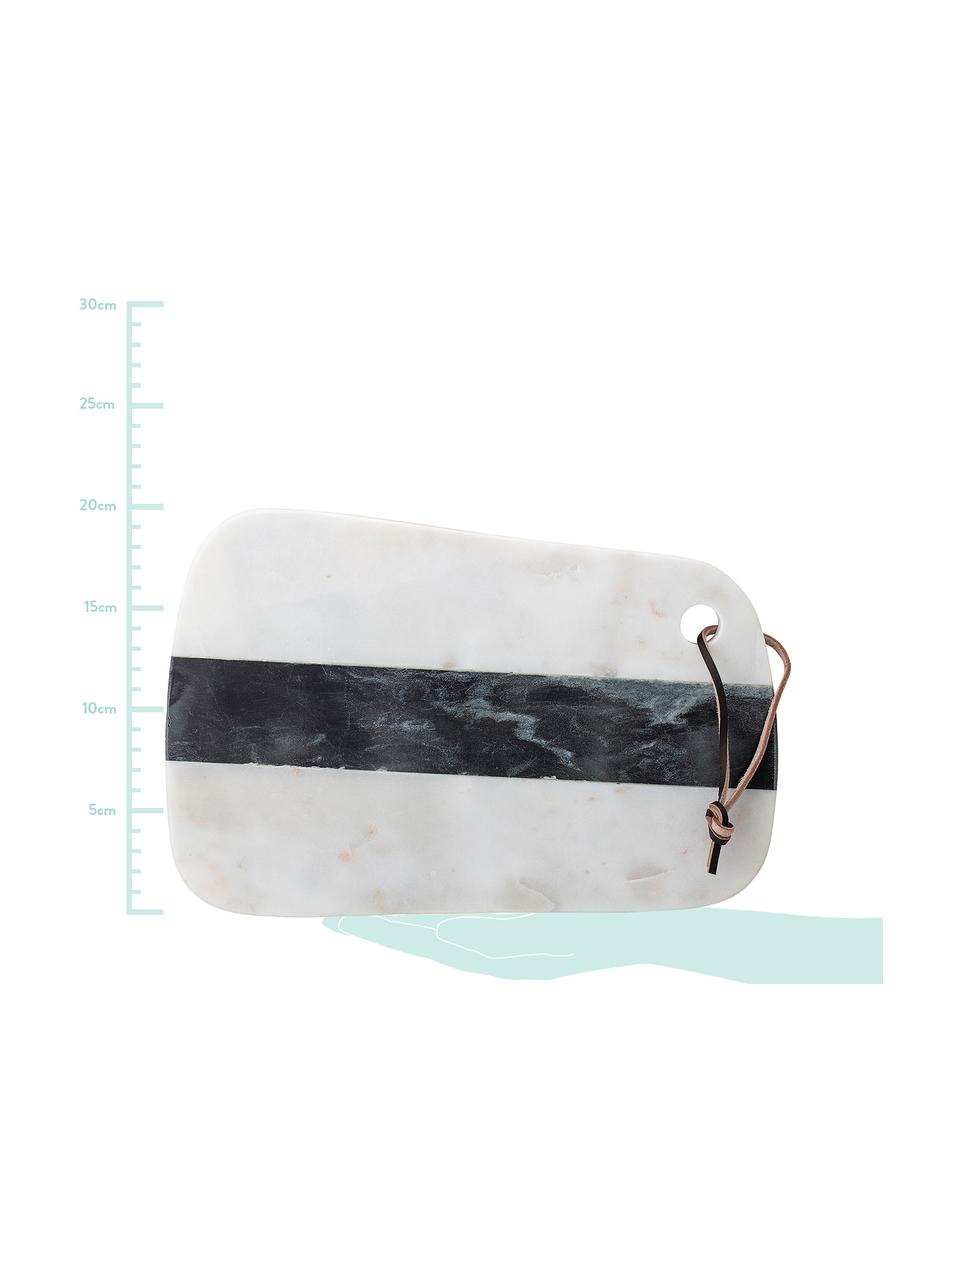 Marmor-Schneidebrett Black and White, B 20 x L 31 cm, Schwarz, Weiss, 20 x 31 cm